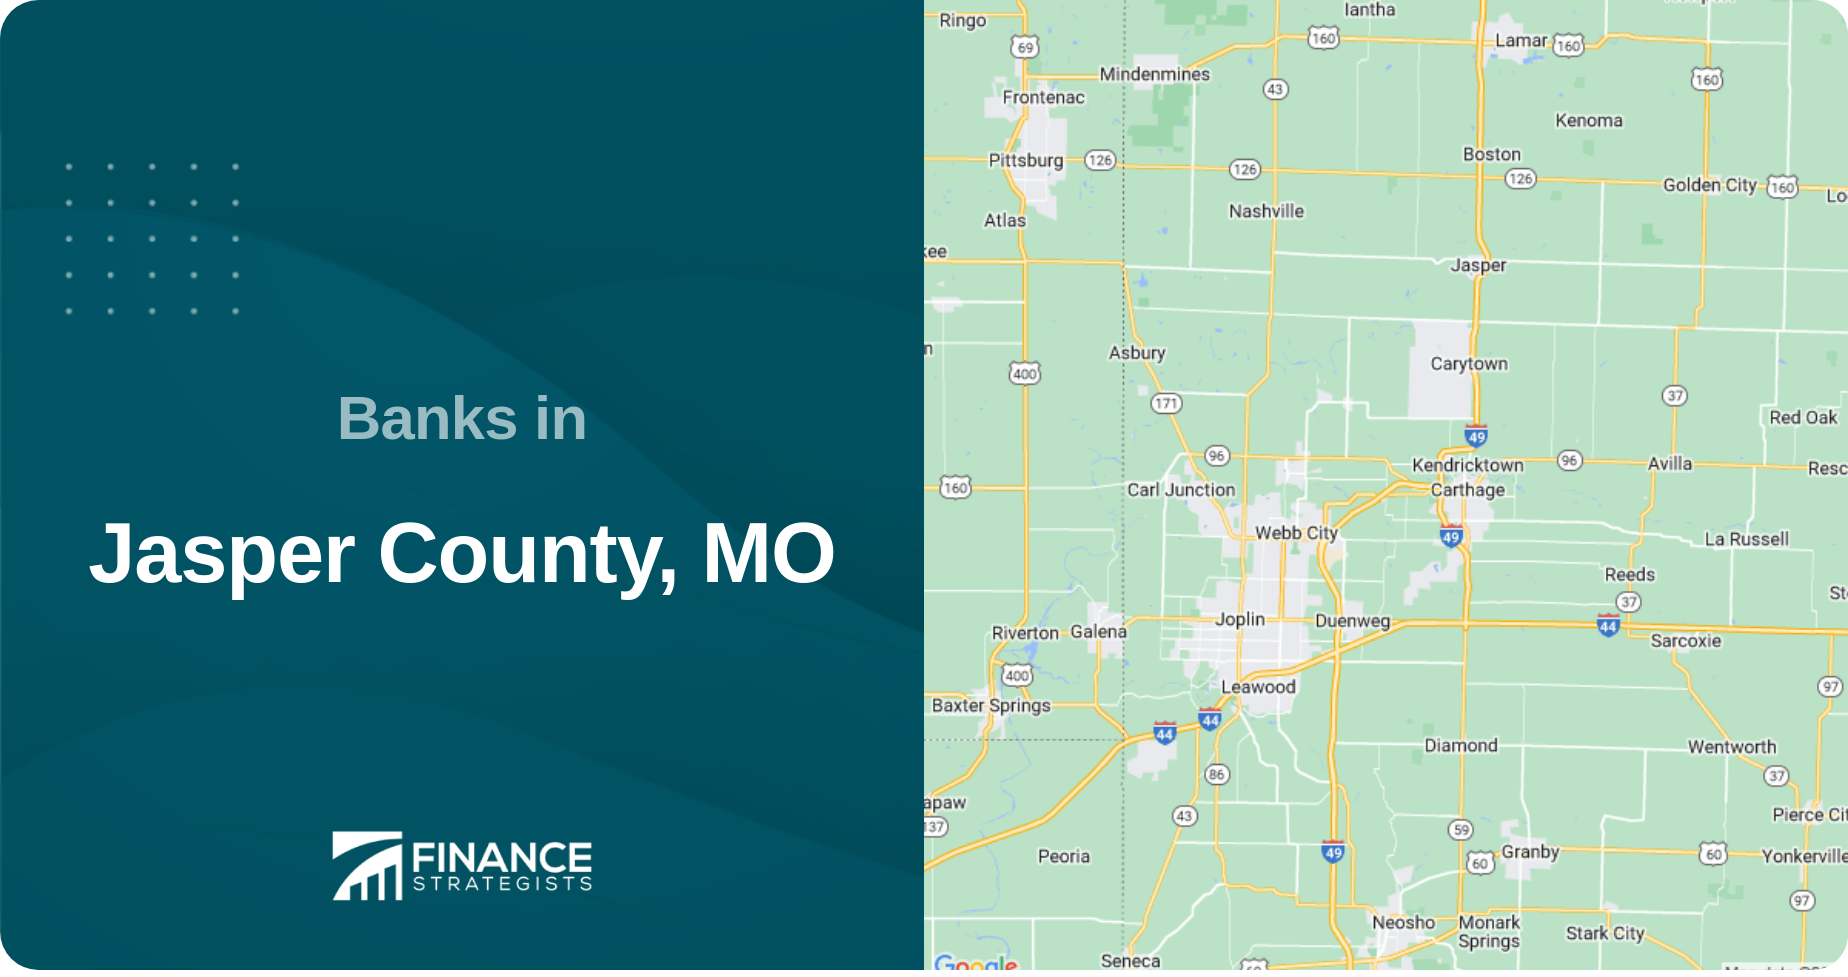 Banks in Jasper County, MO